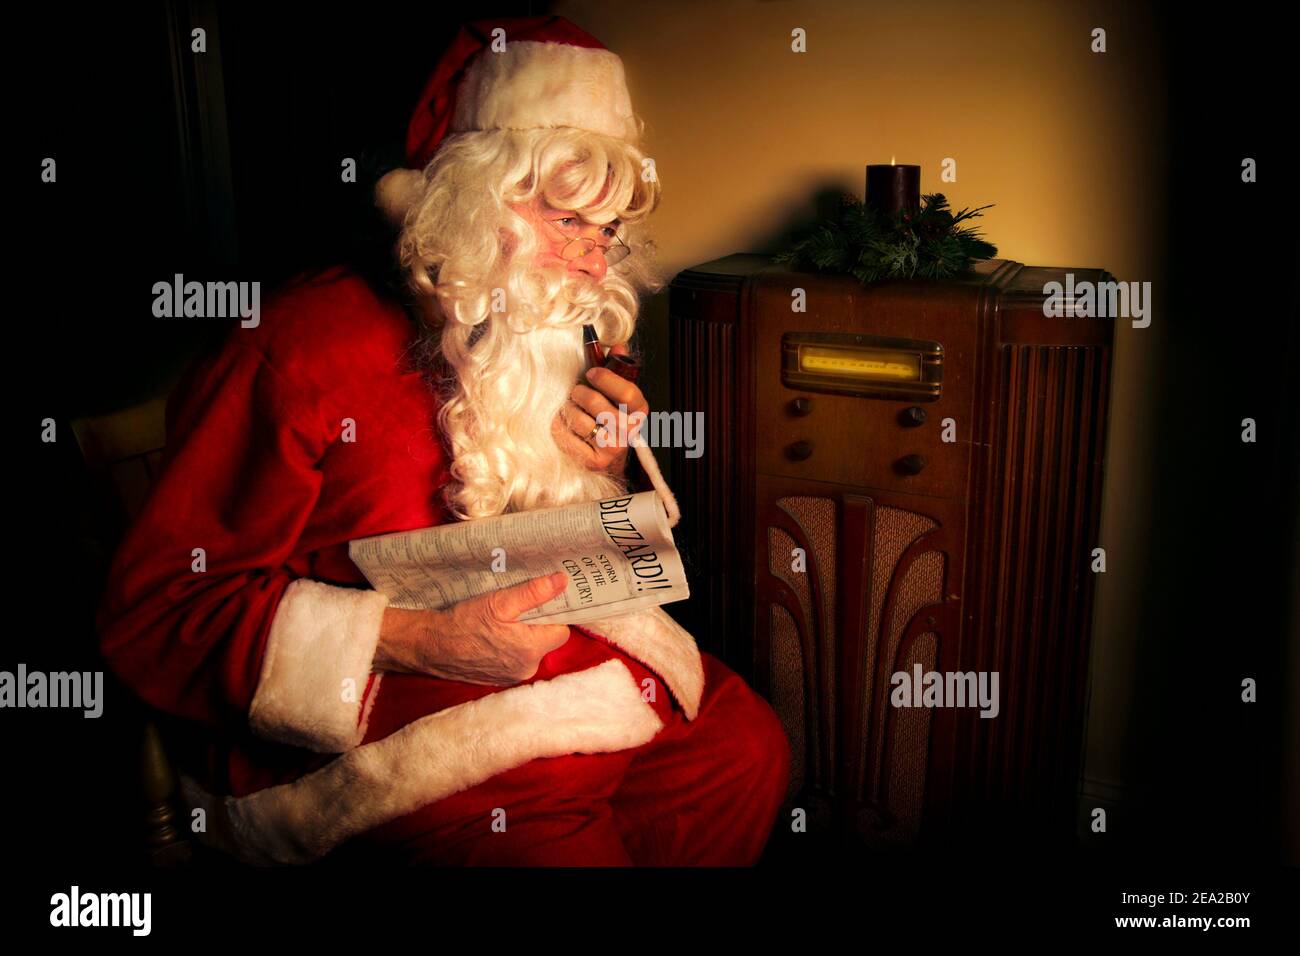 Der Weihnachtsmann hört dem Wetterbericht ein altmodisches Radio. Er hält  eine Zeitung, die sagt "Blizzard!" Darauf Stockfotografie - Alamy